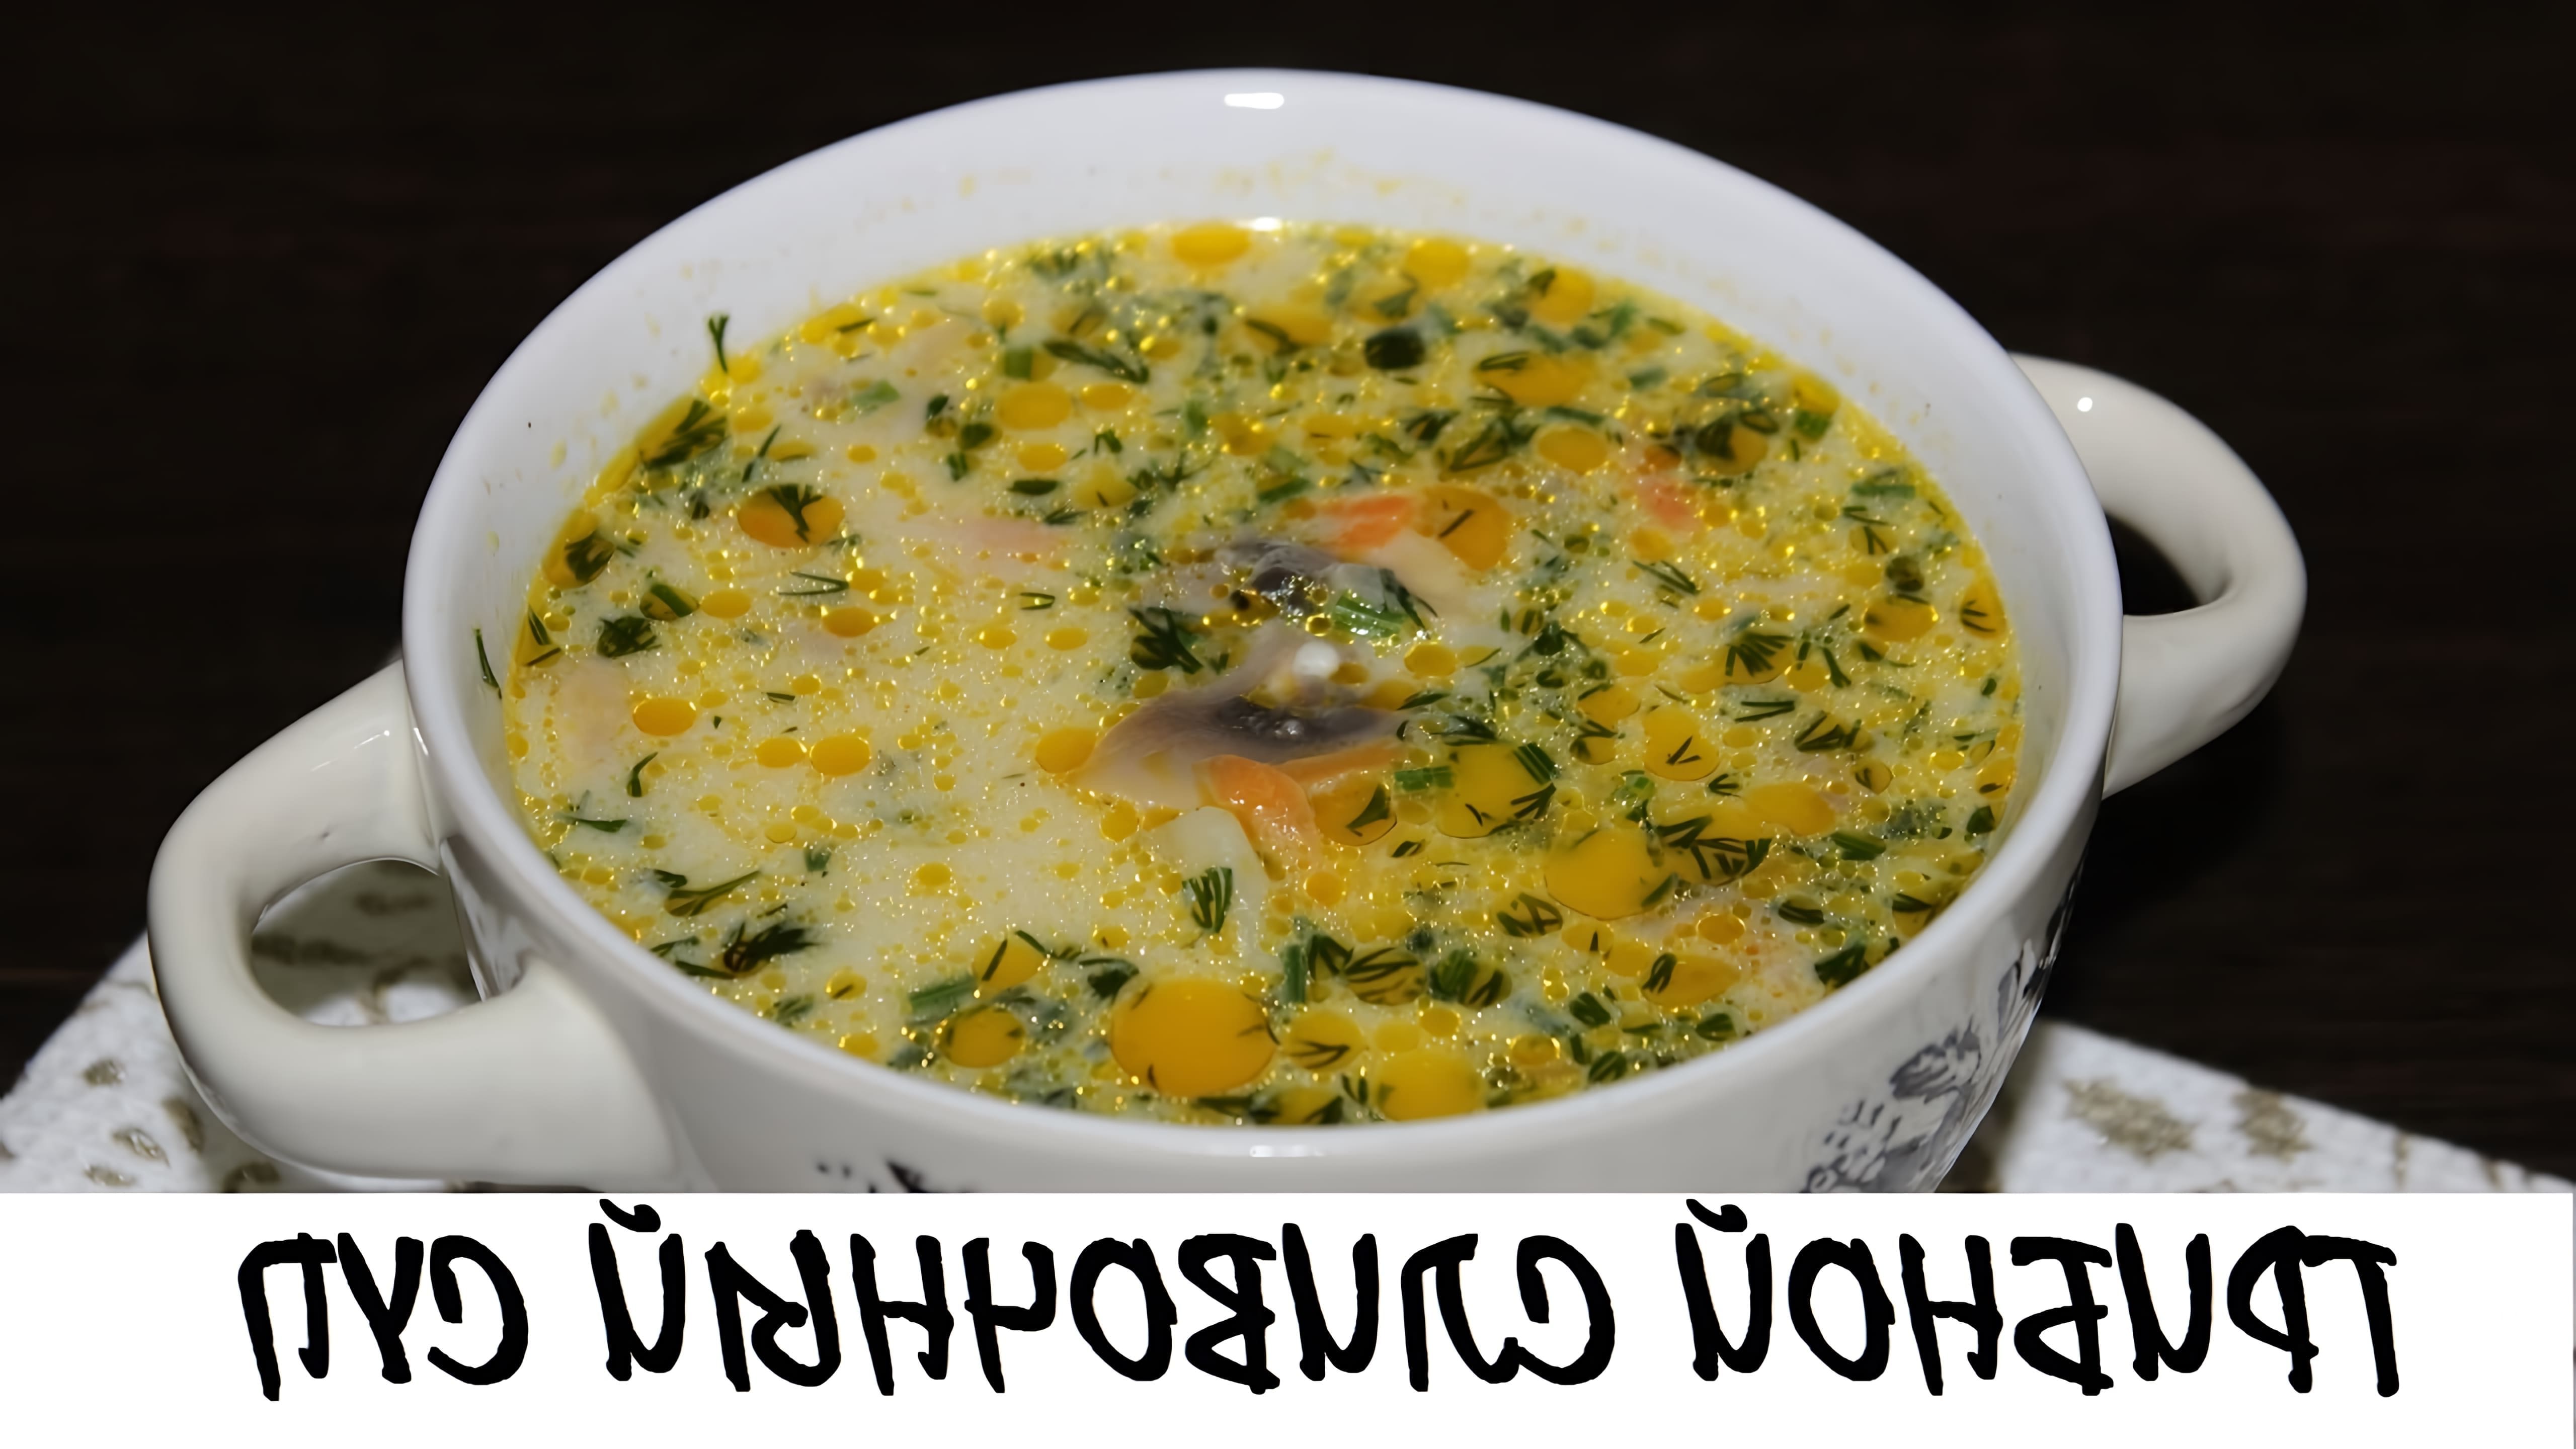 Рецепт сливочного супа с грибами достаточно прост и легок в приготовлении, к тому же он получается очень вкусным и... 